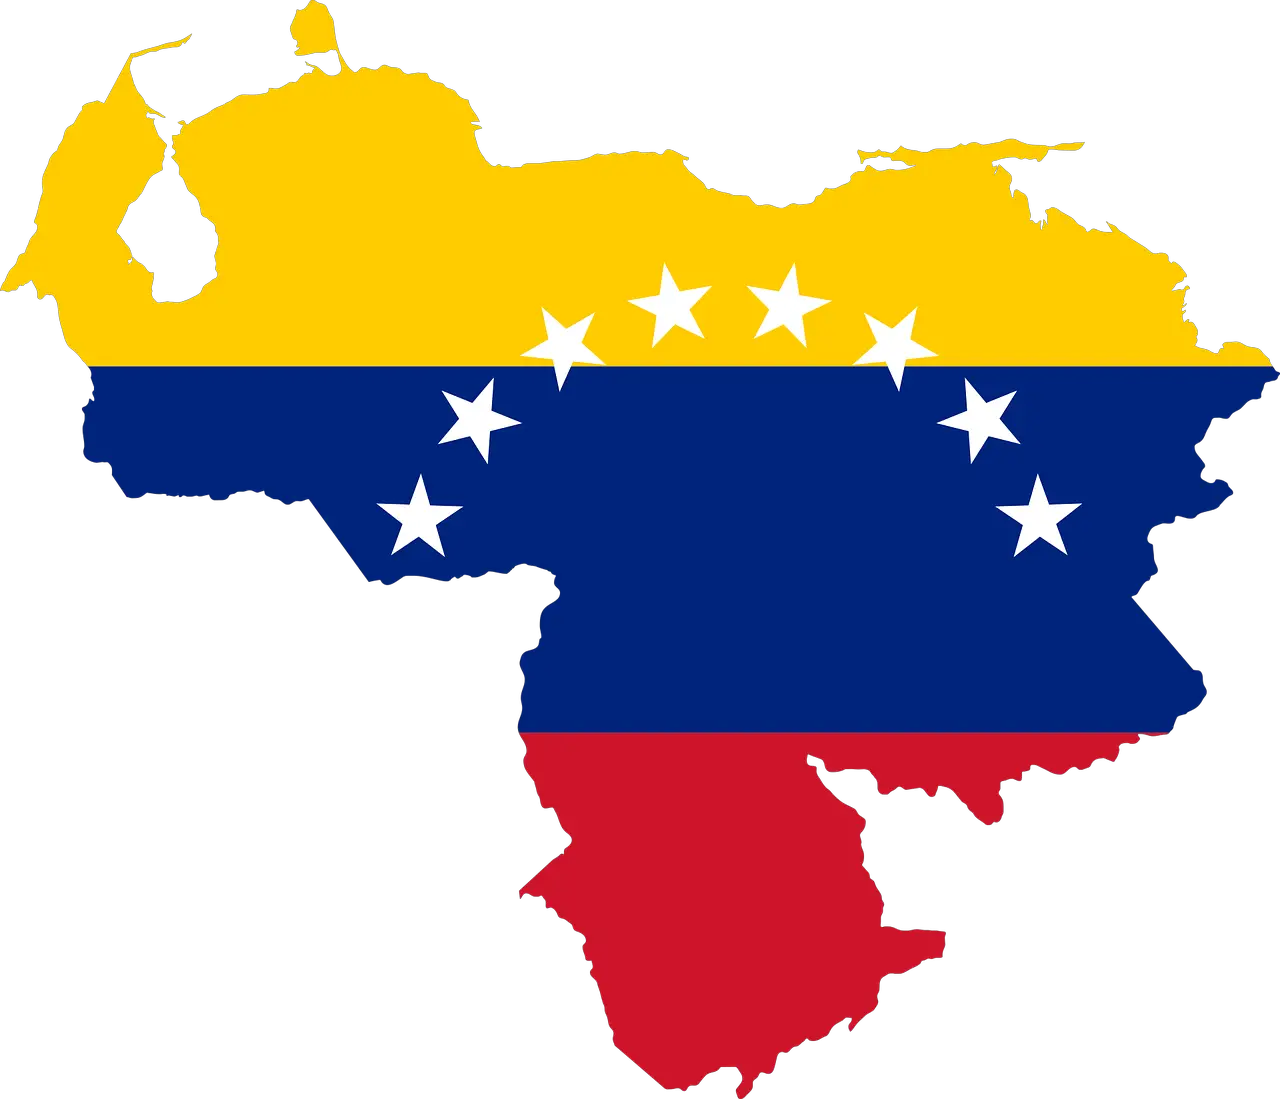 Organized Crime constitutes 21% of the GDP of Venezuela